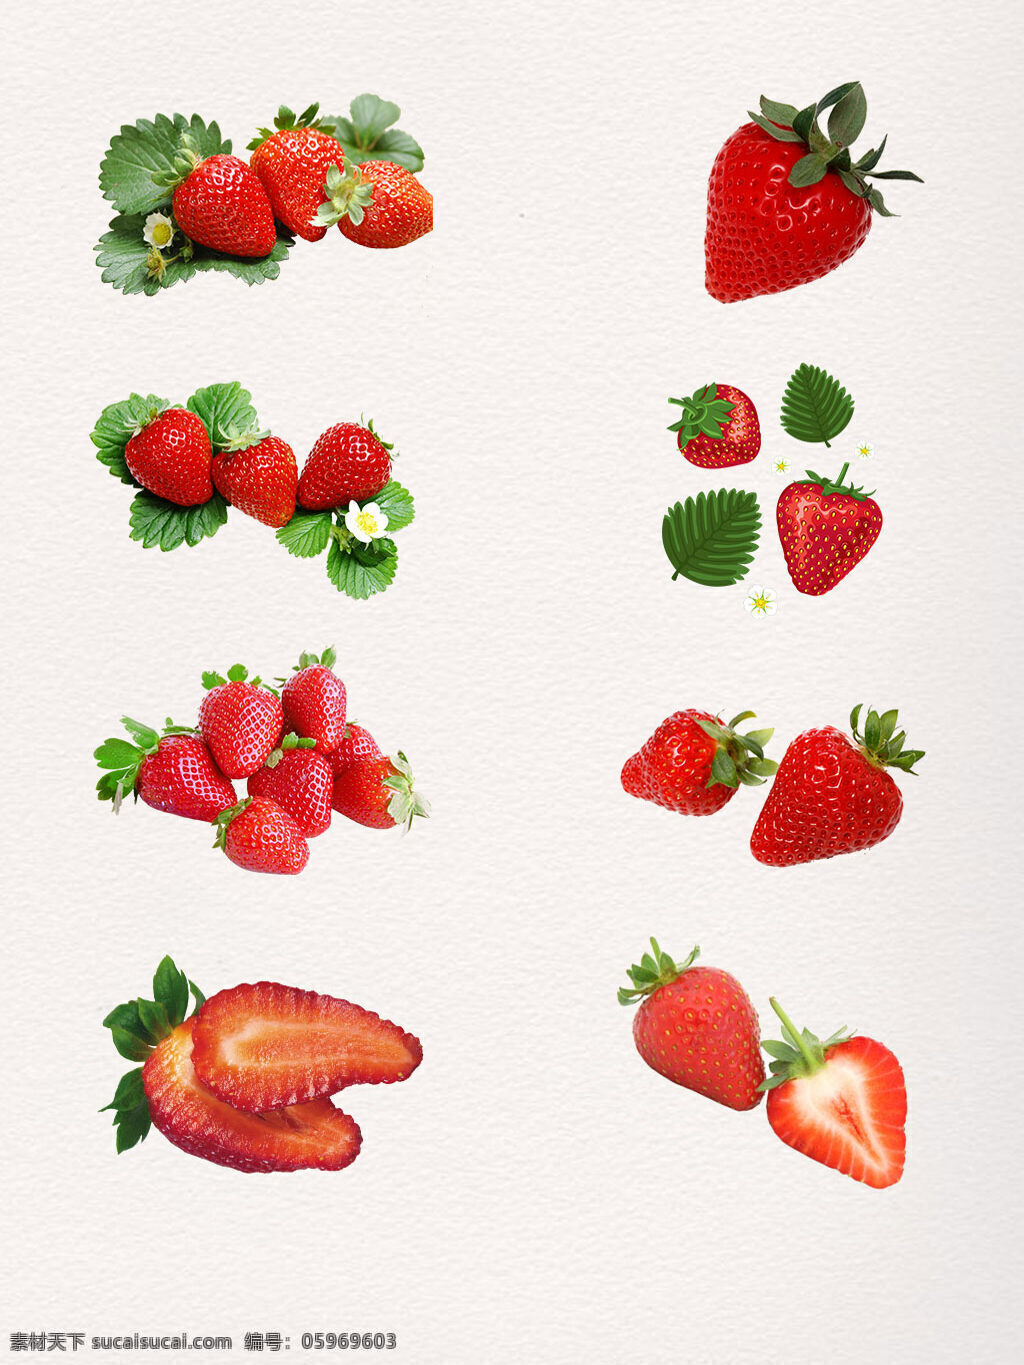 新鲜 草莓 水果 叶子 png素材 草莓高清素材 草莓叶子 红色 红色草莓 健康 新鲜的草莓 新鲜水果 营养